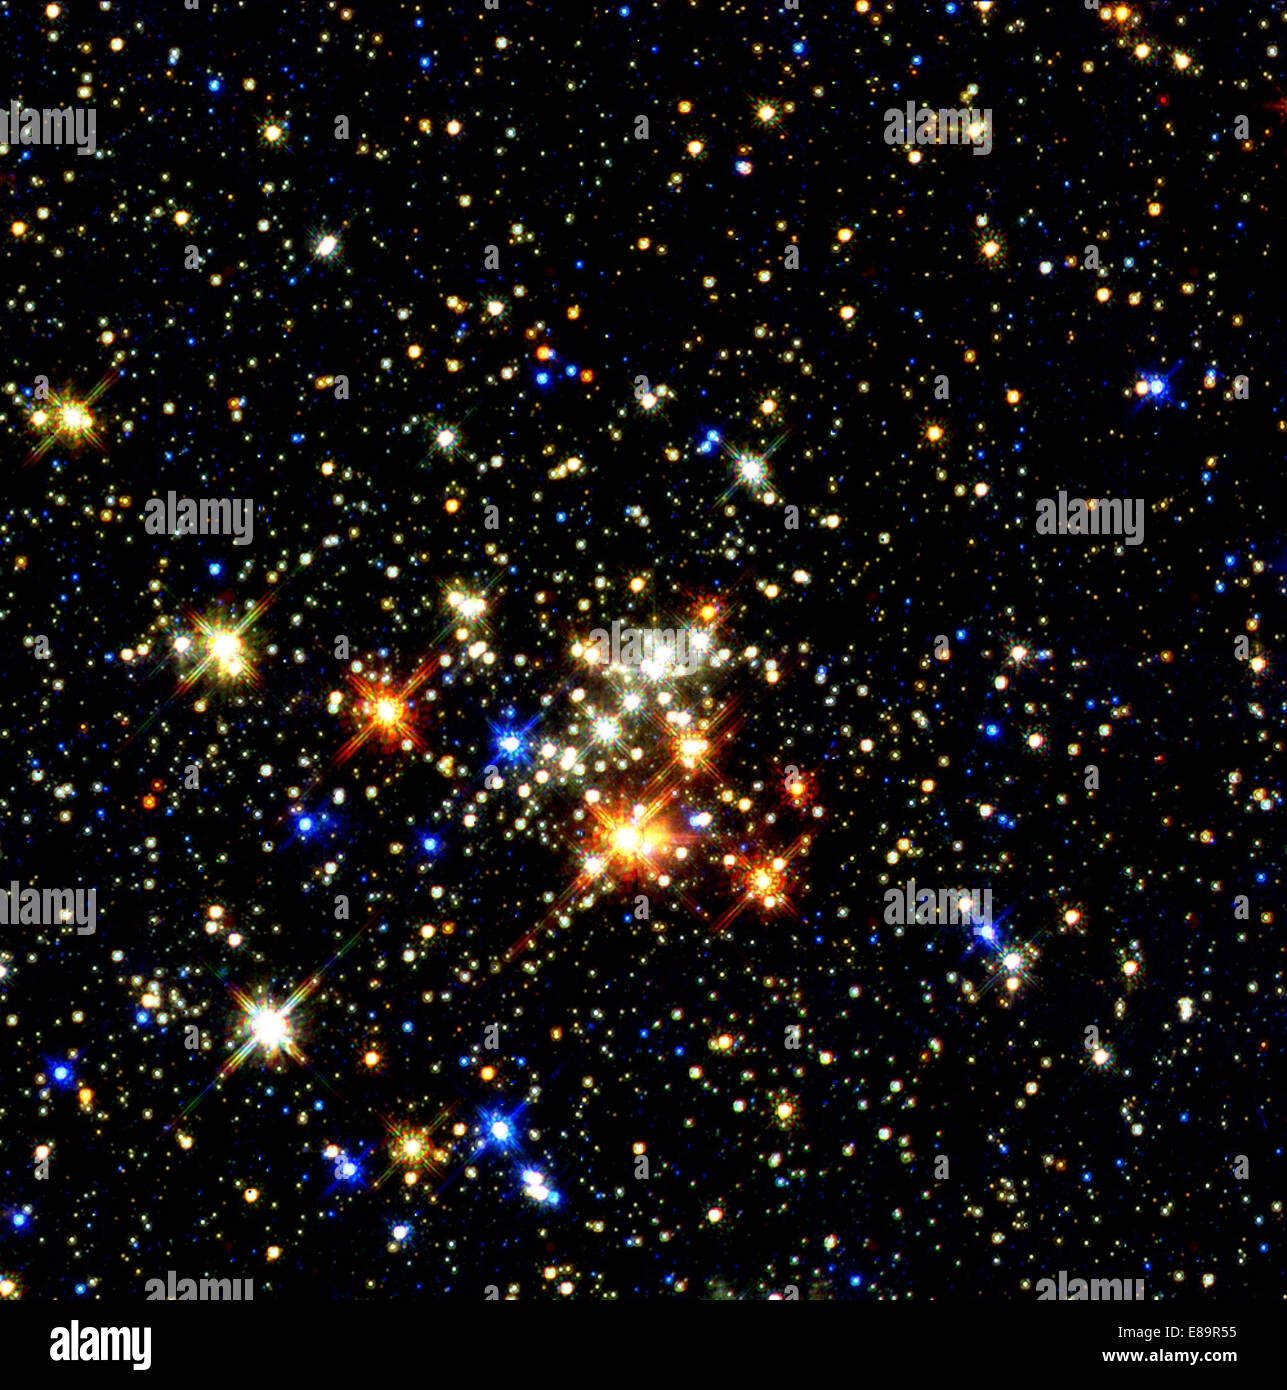 Penetrando 25.000 anni-luce di oscurare la polvere e una miriade di stelle, NASA il telescopio spaziale Hubble ha fornito la vista più chiara Foto Stock